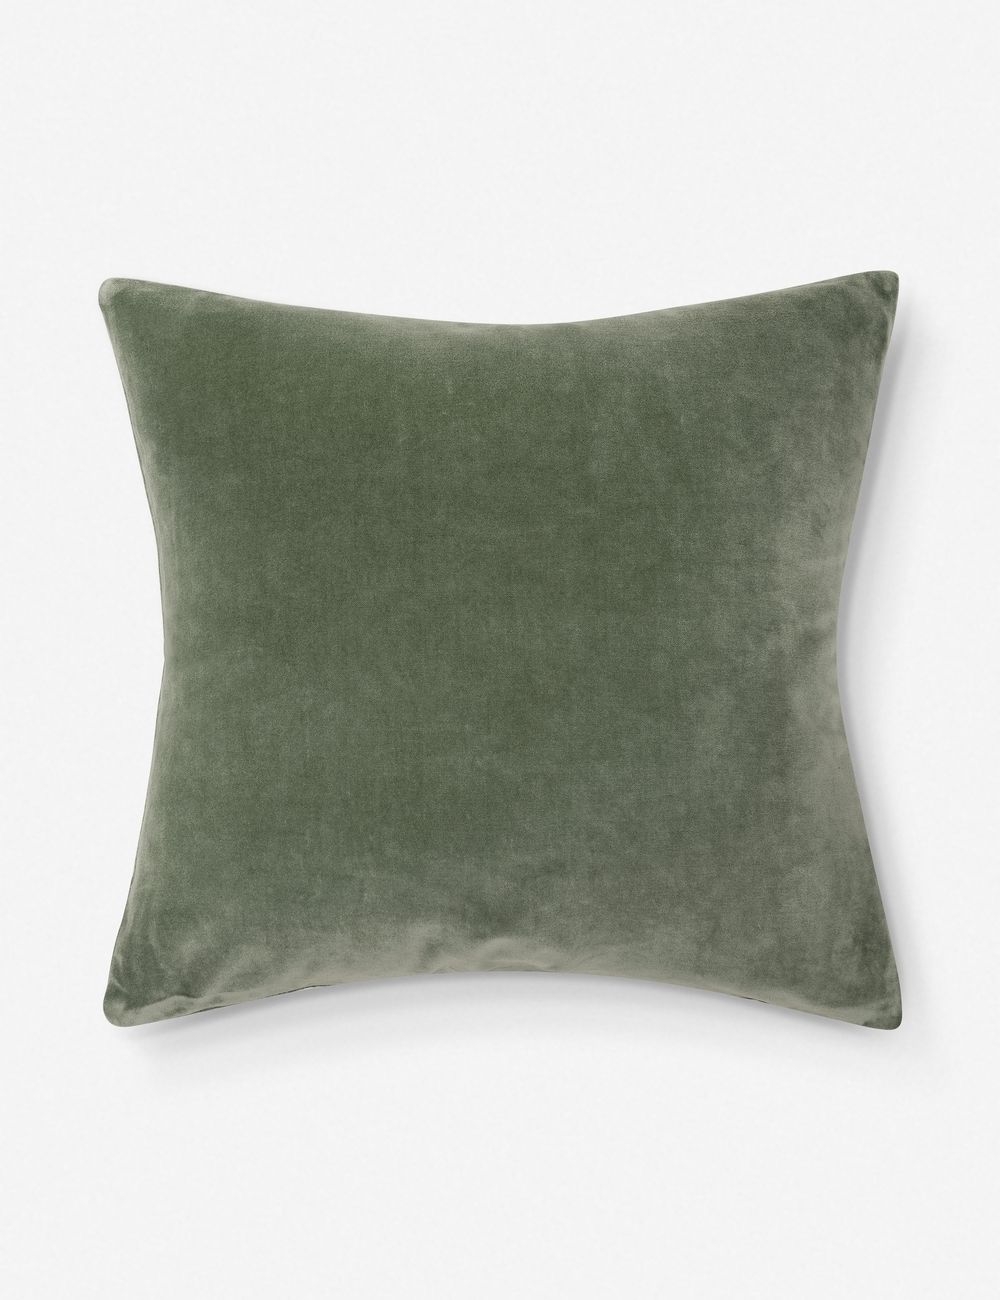 Charlotte Velvet Pillow, Moss, Down Insert Included - Image 0